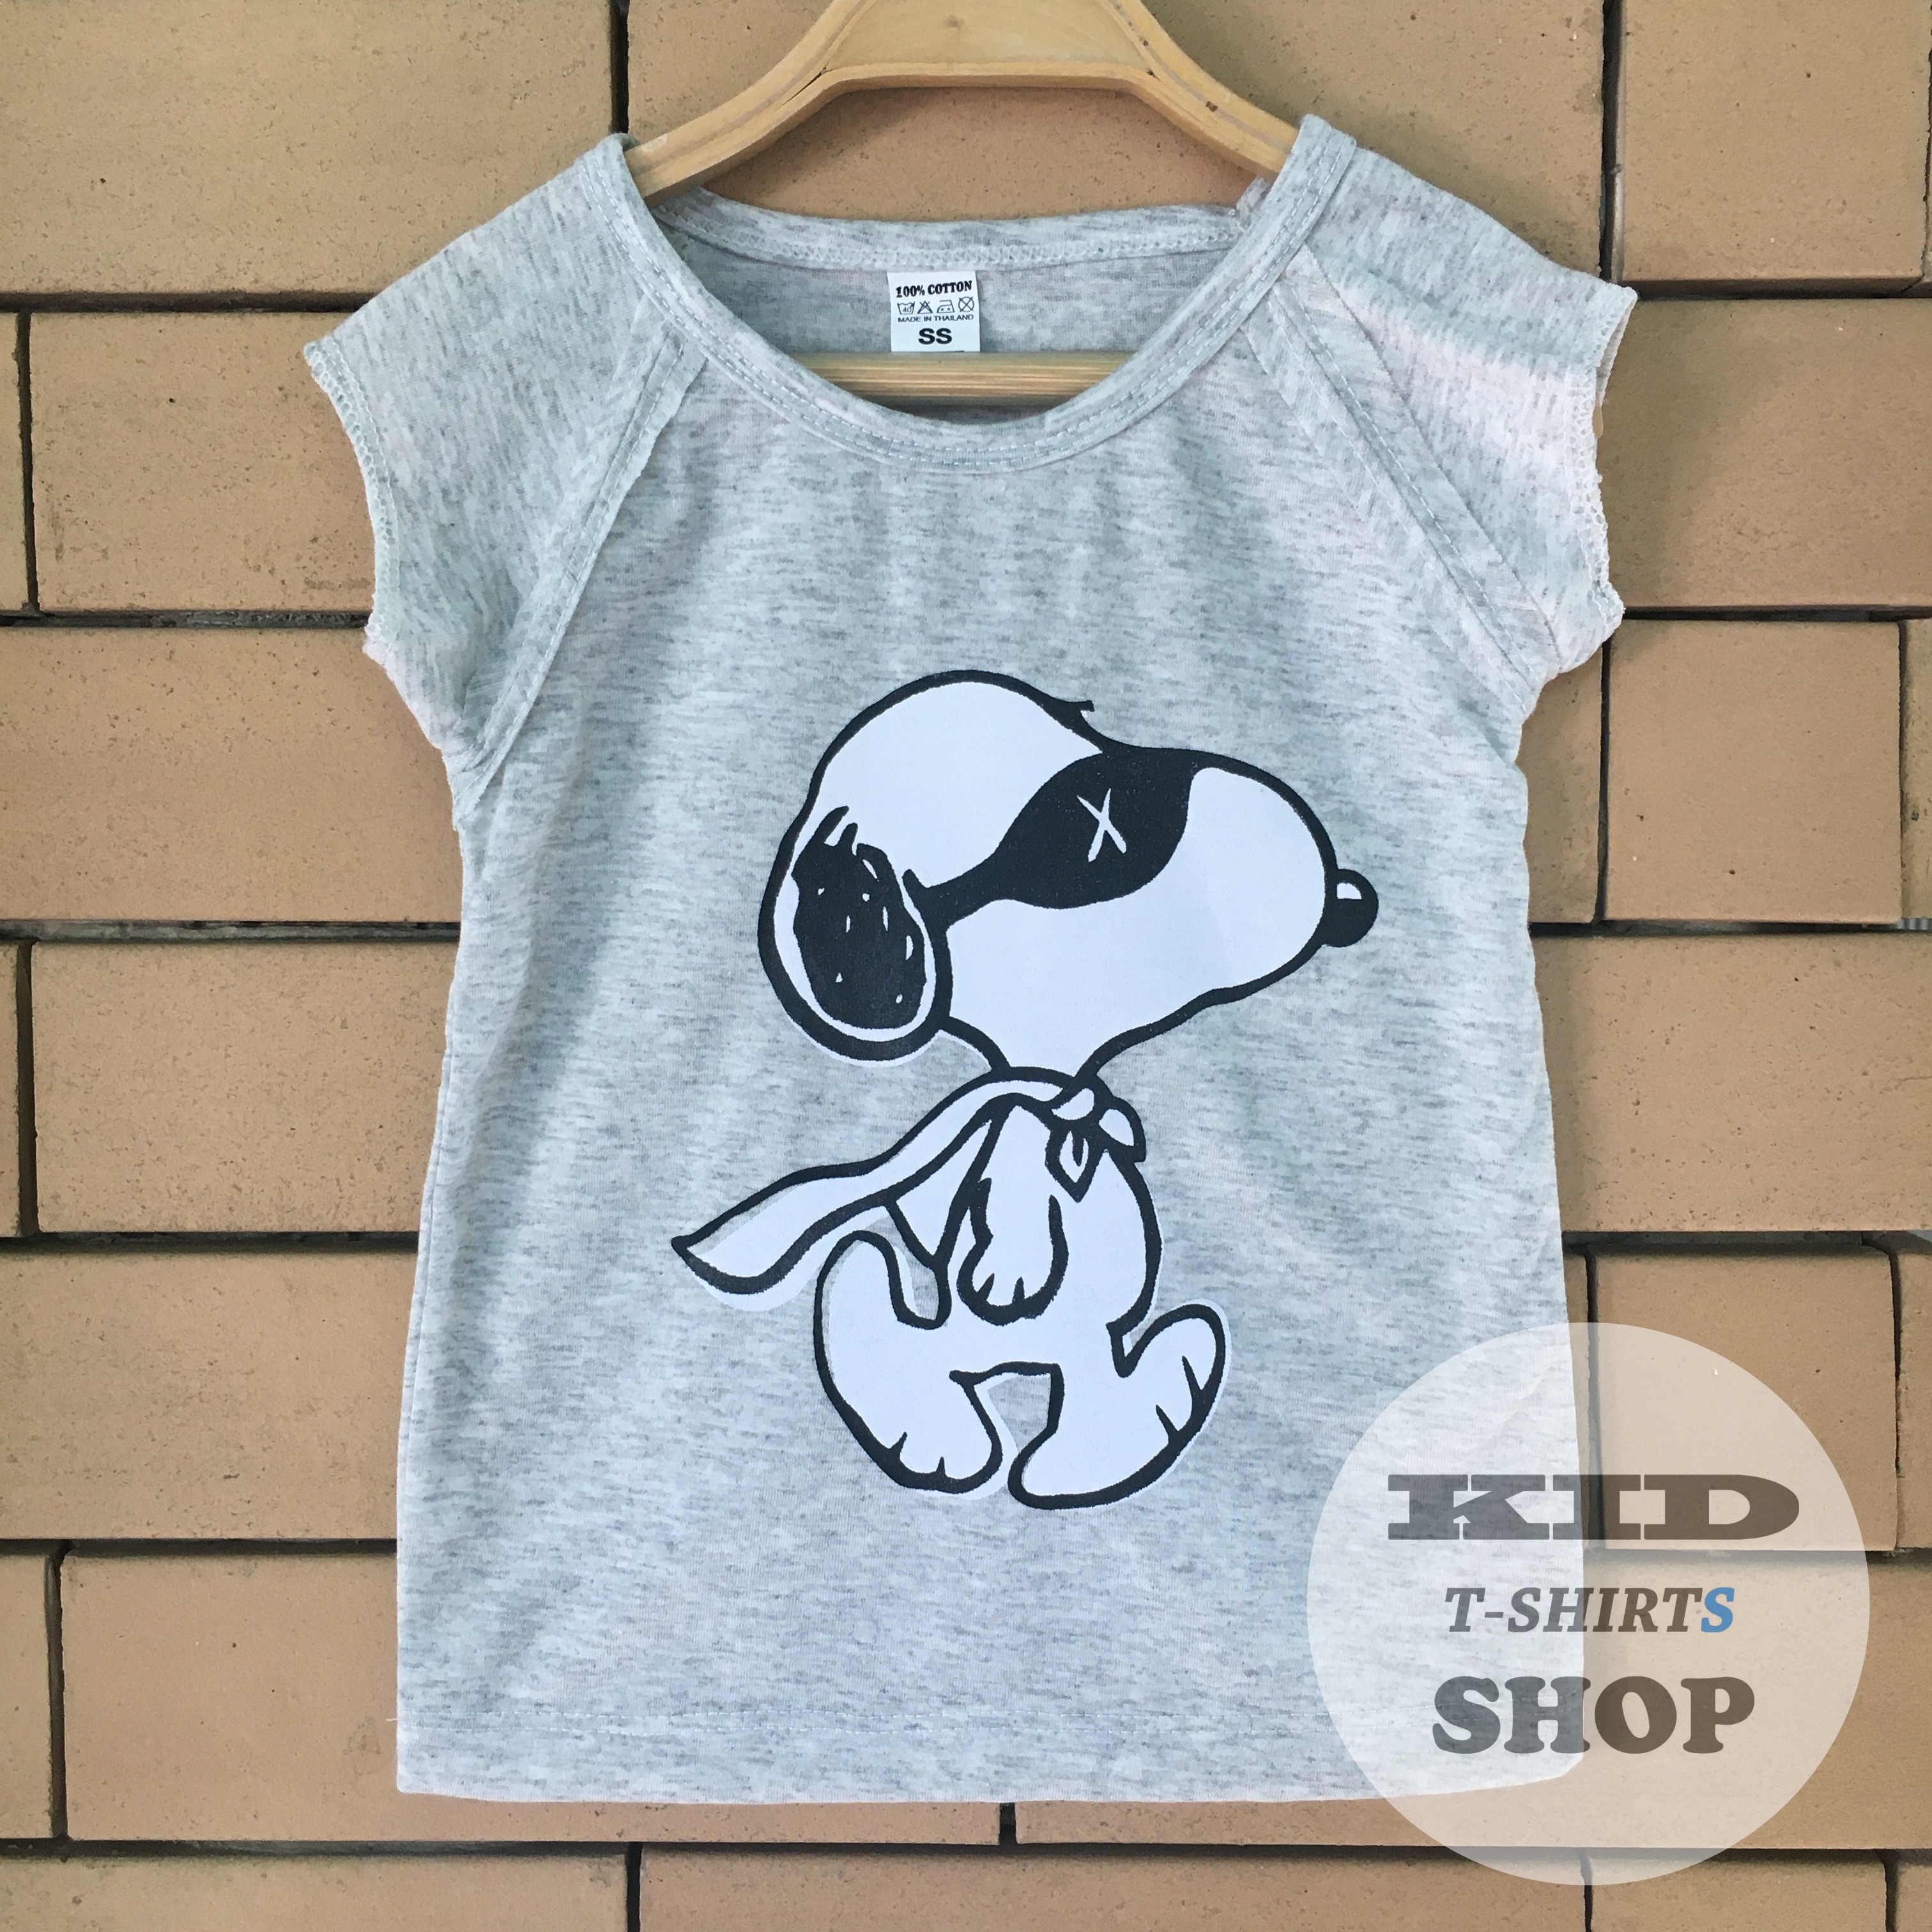 BabyOutlet เสื้อยืดเด็ก Snoopy สนูปปี้ Peanuts Charlie BROWN สีเทา แขนกุด ล่ำ มี 4 ไซส์ (SS , S , M , L) เสื้อเด็ก มี Size แรกเกิด - 6 ปี ชุดเด็ก ผลิตจากผ้าฝ้าย 100%